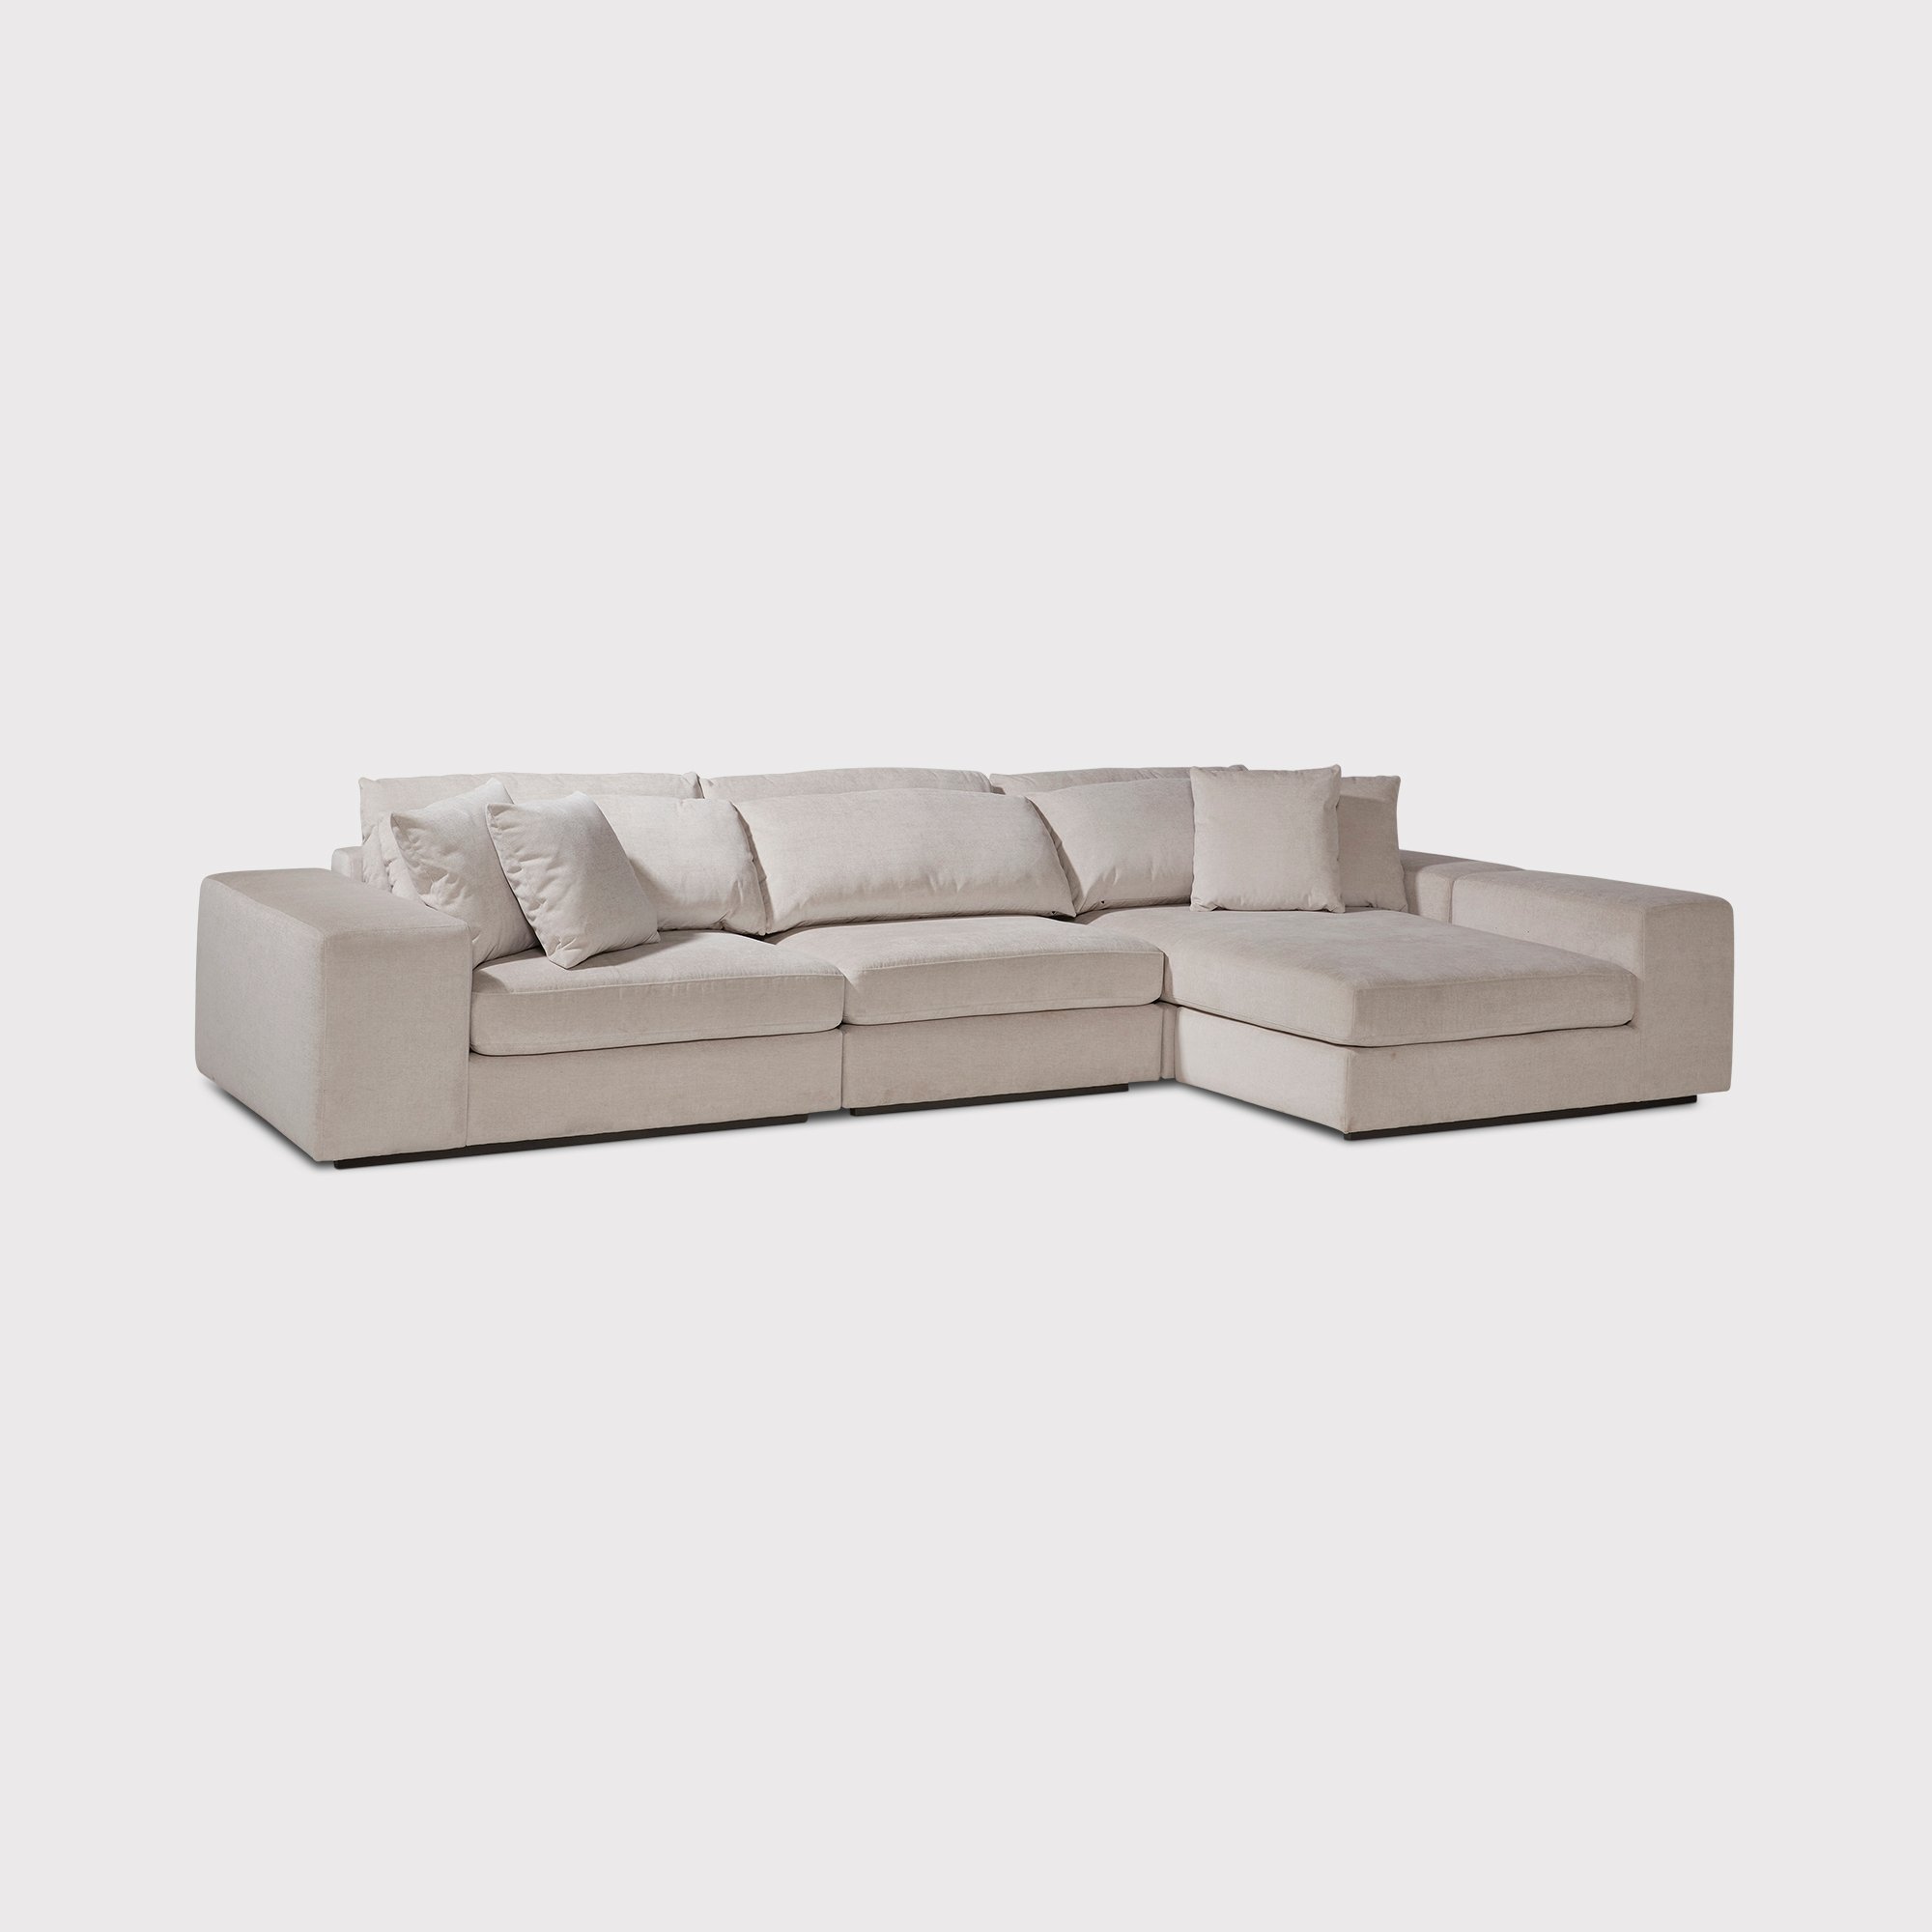 Eichholtz Vista Grande Lounge Corner Sofa, White Fabric | Barker & Stonehouse